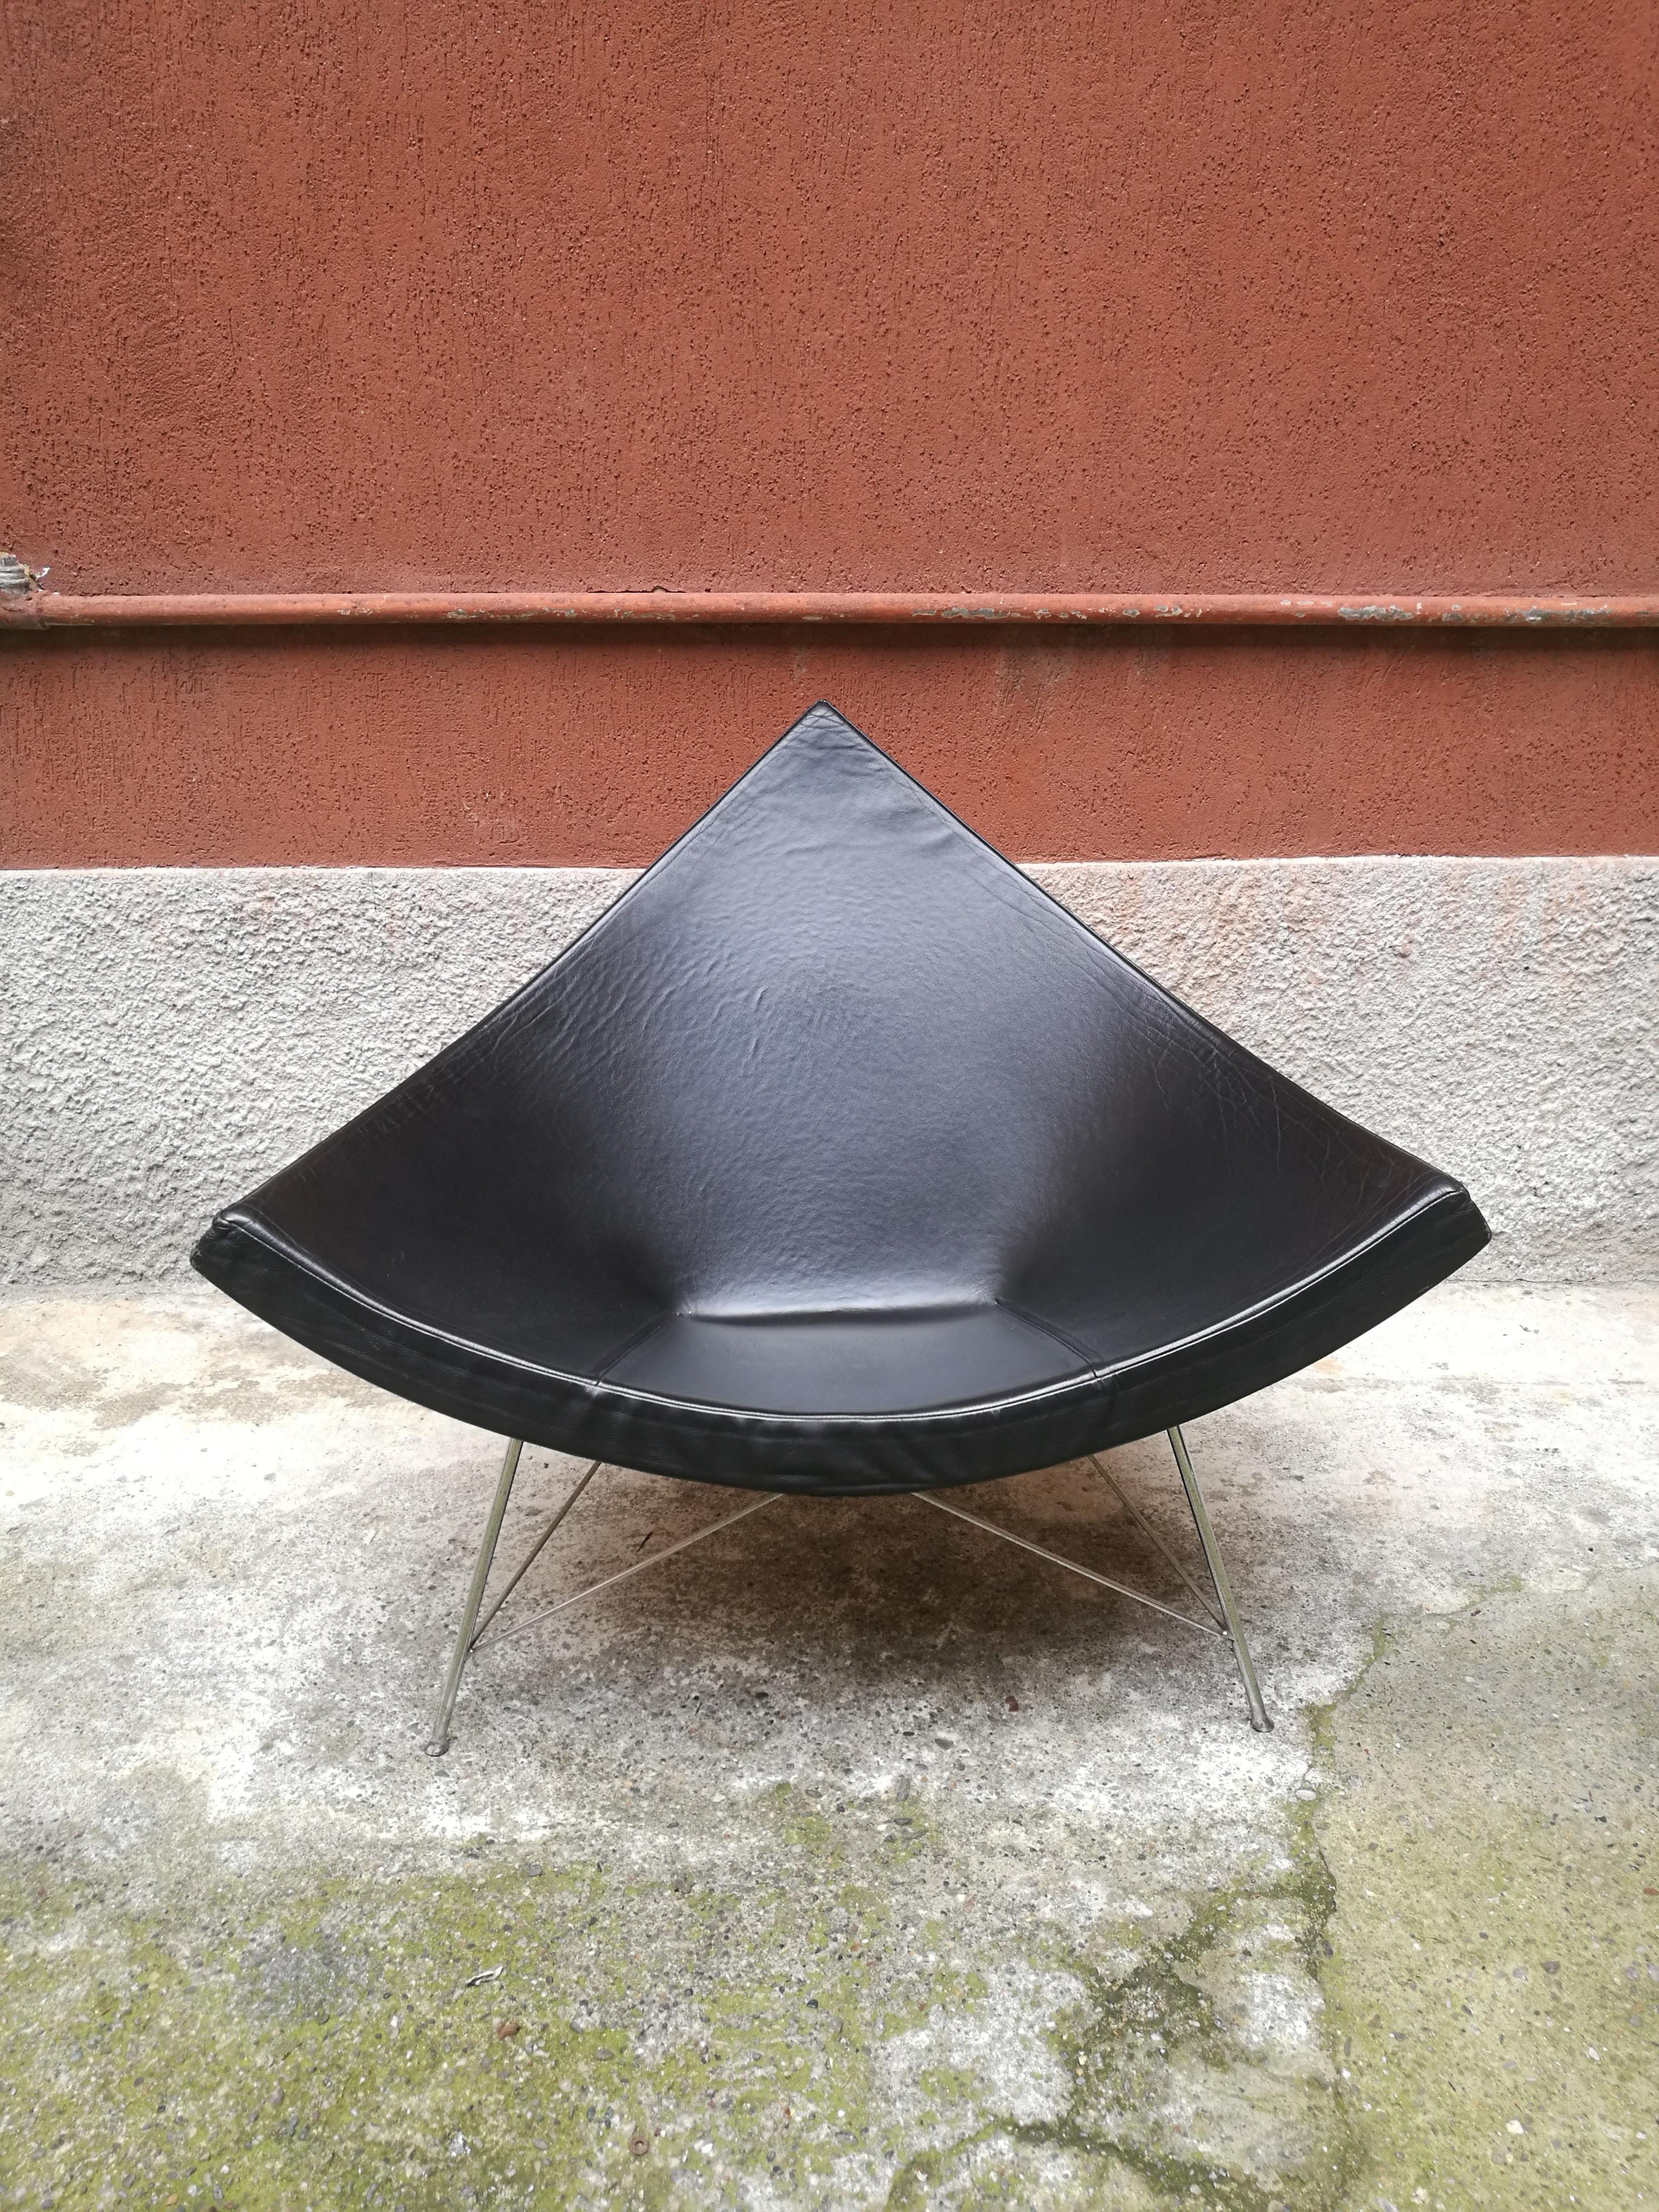 Kokosnuss-Sessel aus schwarzem Leder von George Nelson, 1950
Der Vitra Coconut Stuhl wurde Mitte der 1950er Jahre von George Nelson entworfen und verkörpert mit seiner charmanten und definierten Figur den Designstil dieser Zeit. Der Rahmen aus